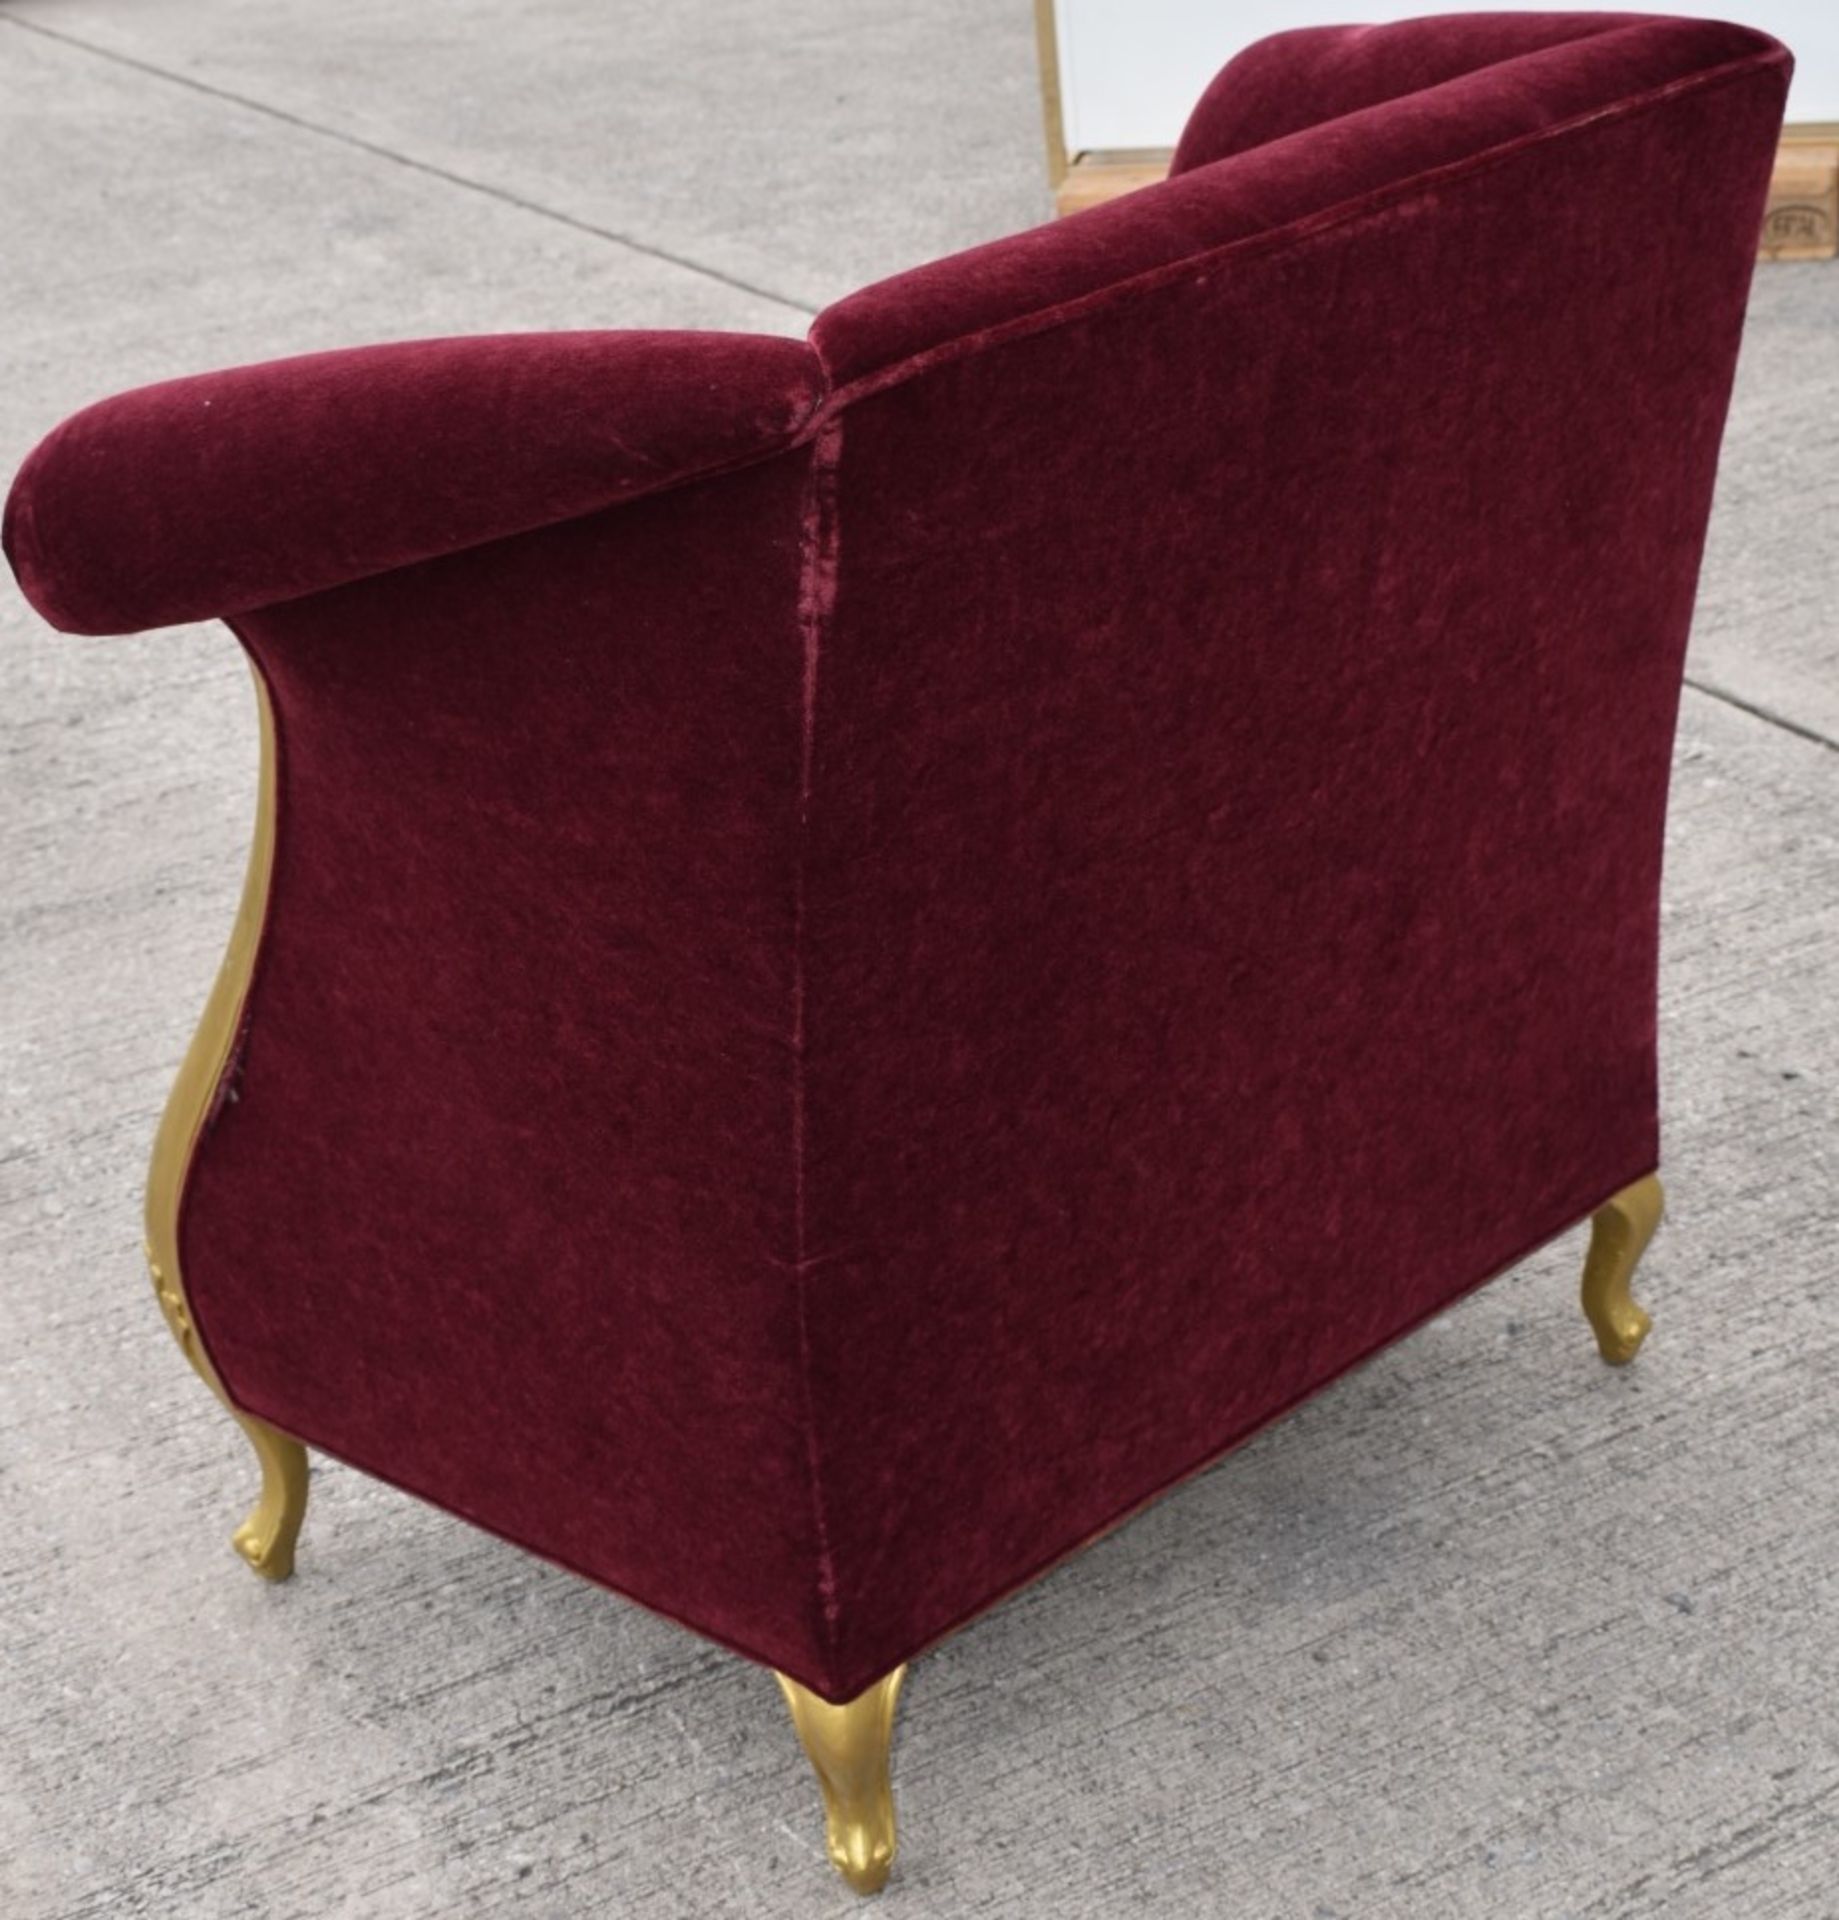 1 x CHRISTOPHER GUY Bespoke Opulent Velvet Upholstered Oversized Armchair - Original Price £4,000 - Image 7 of 9